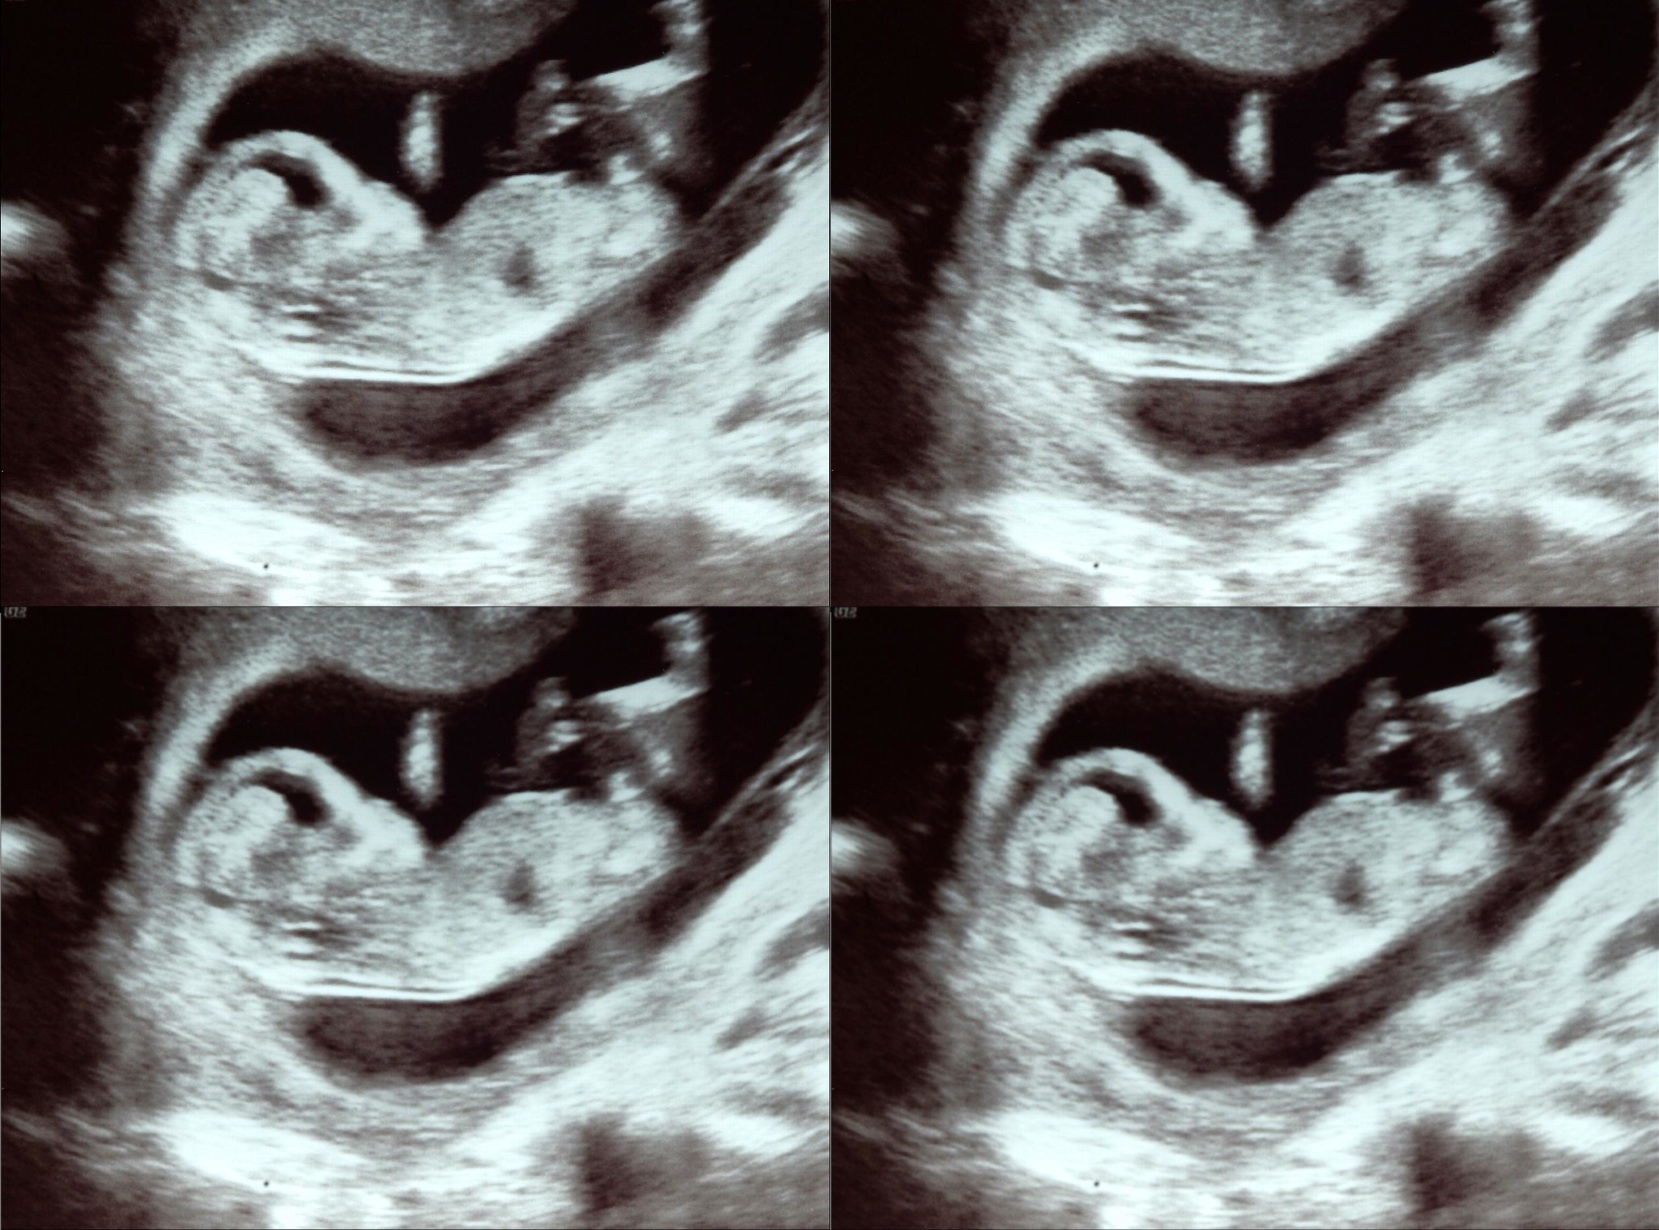 Une grossesse simultanée de deux paires de jumeaux ! © Rowen Atkinson, Flickr